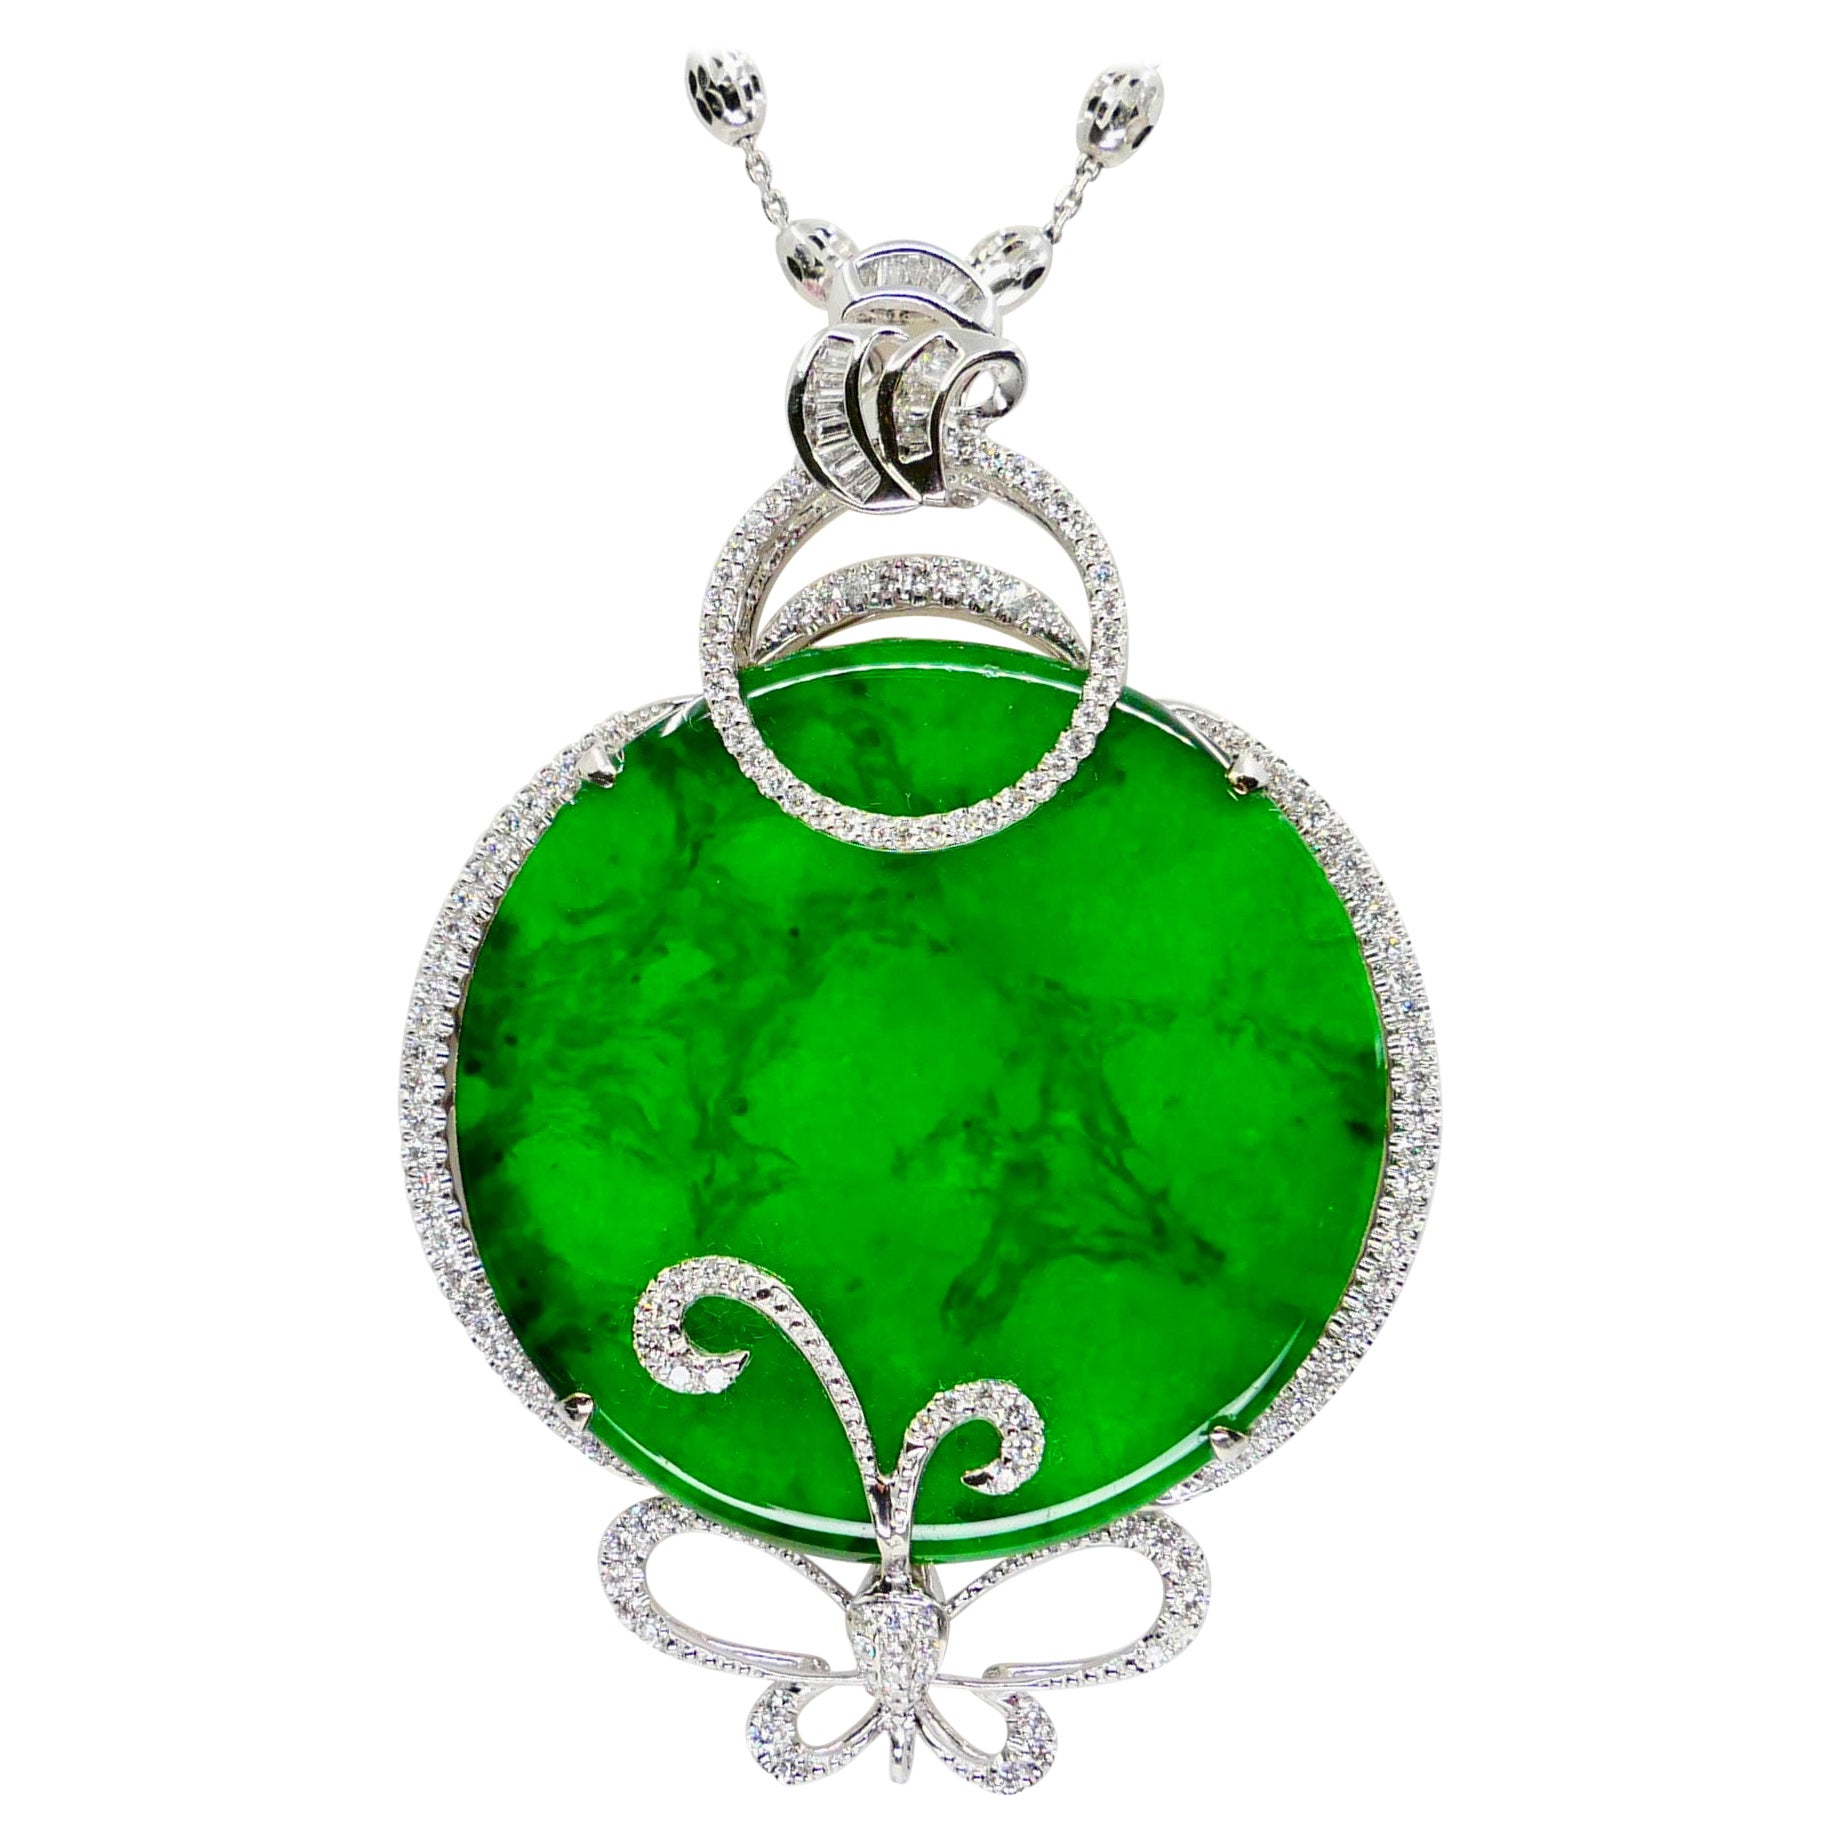 Certified Imperial & Apple Green Jadeite Jade Diamond Pendant, Sika Deer Pattern